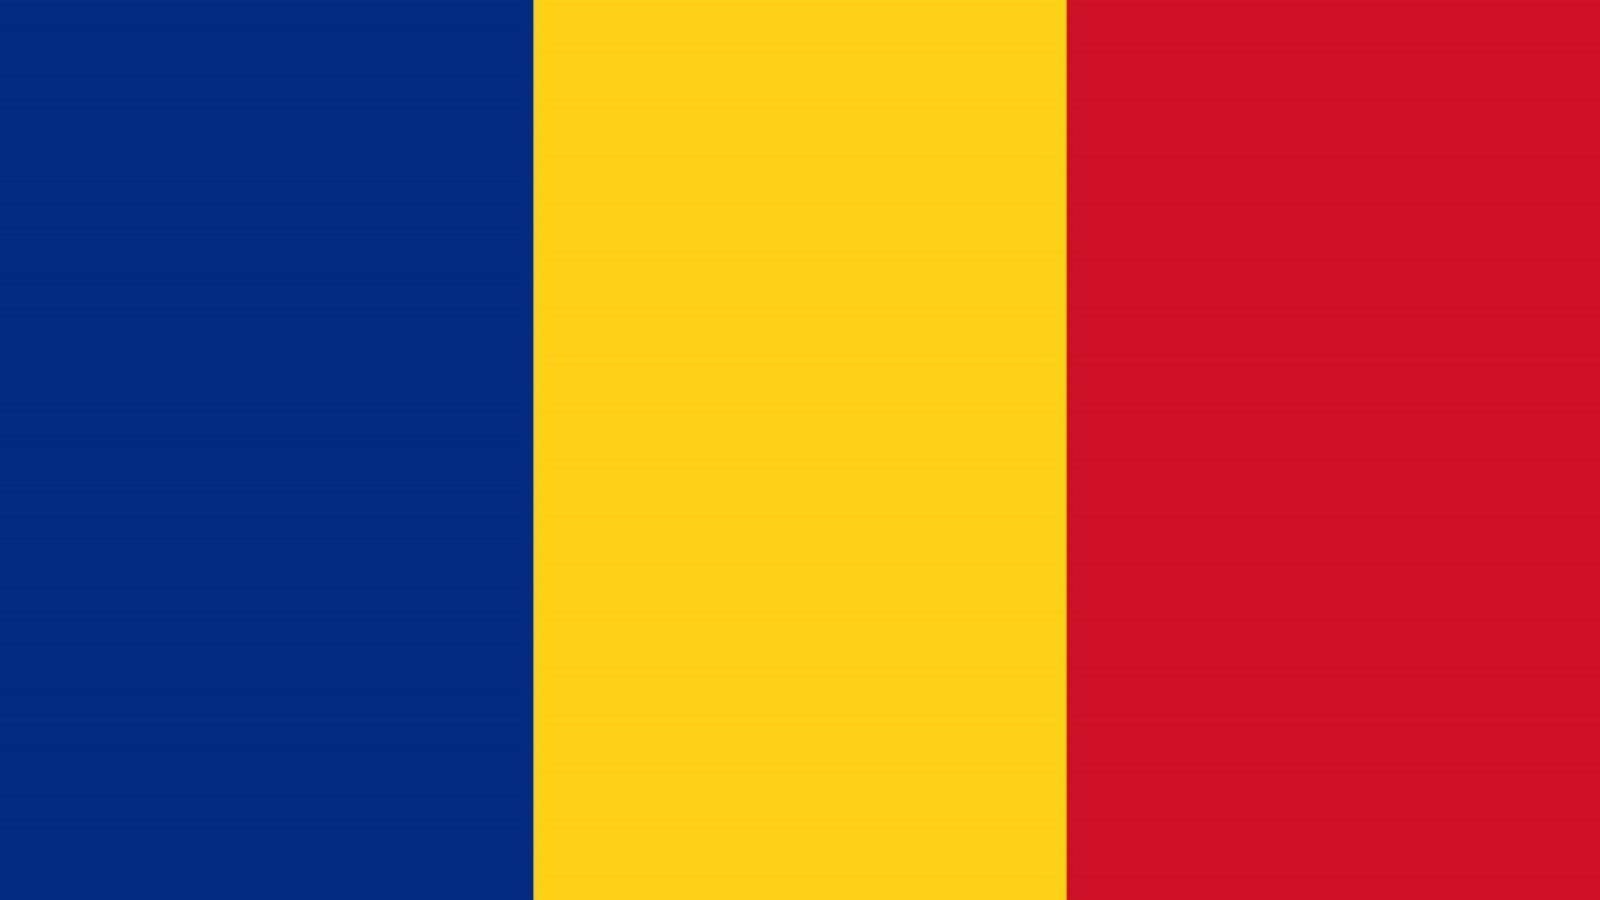 Restricciones de tráfico del gobierno rumano